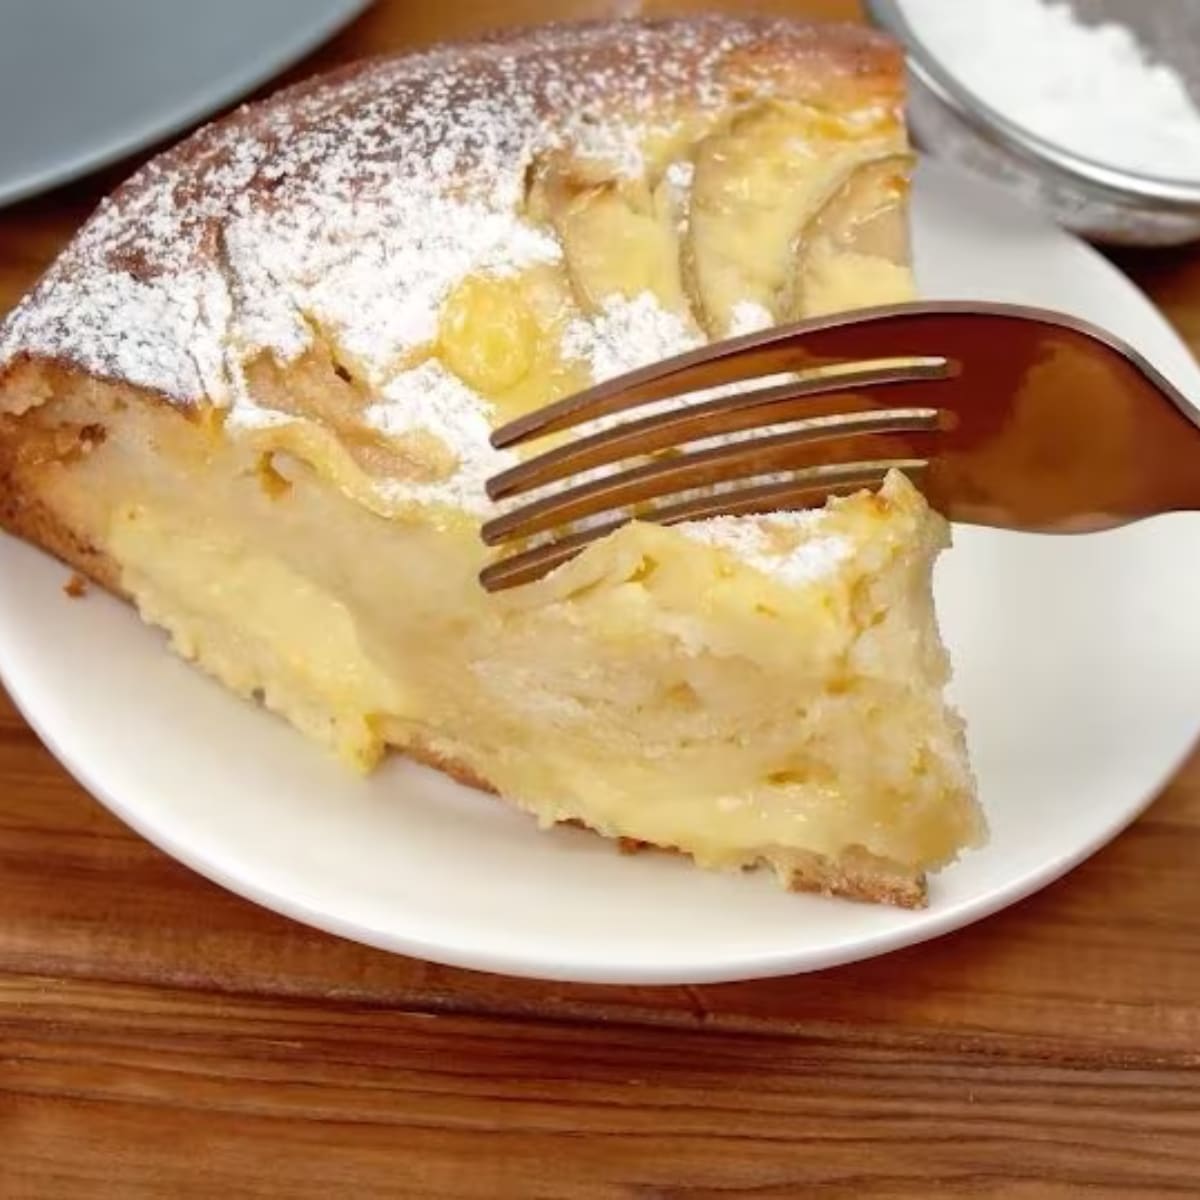 Comment préparer rapidement un délicieux gâteau moelleux aux pommes et à la crème vanille !